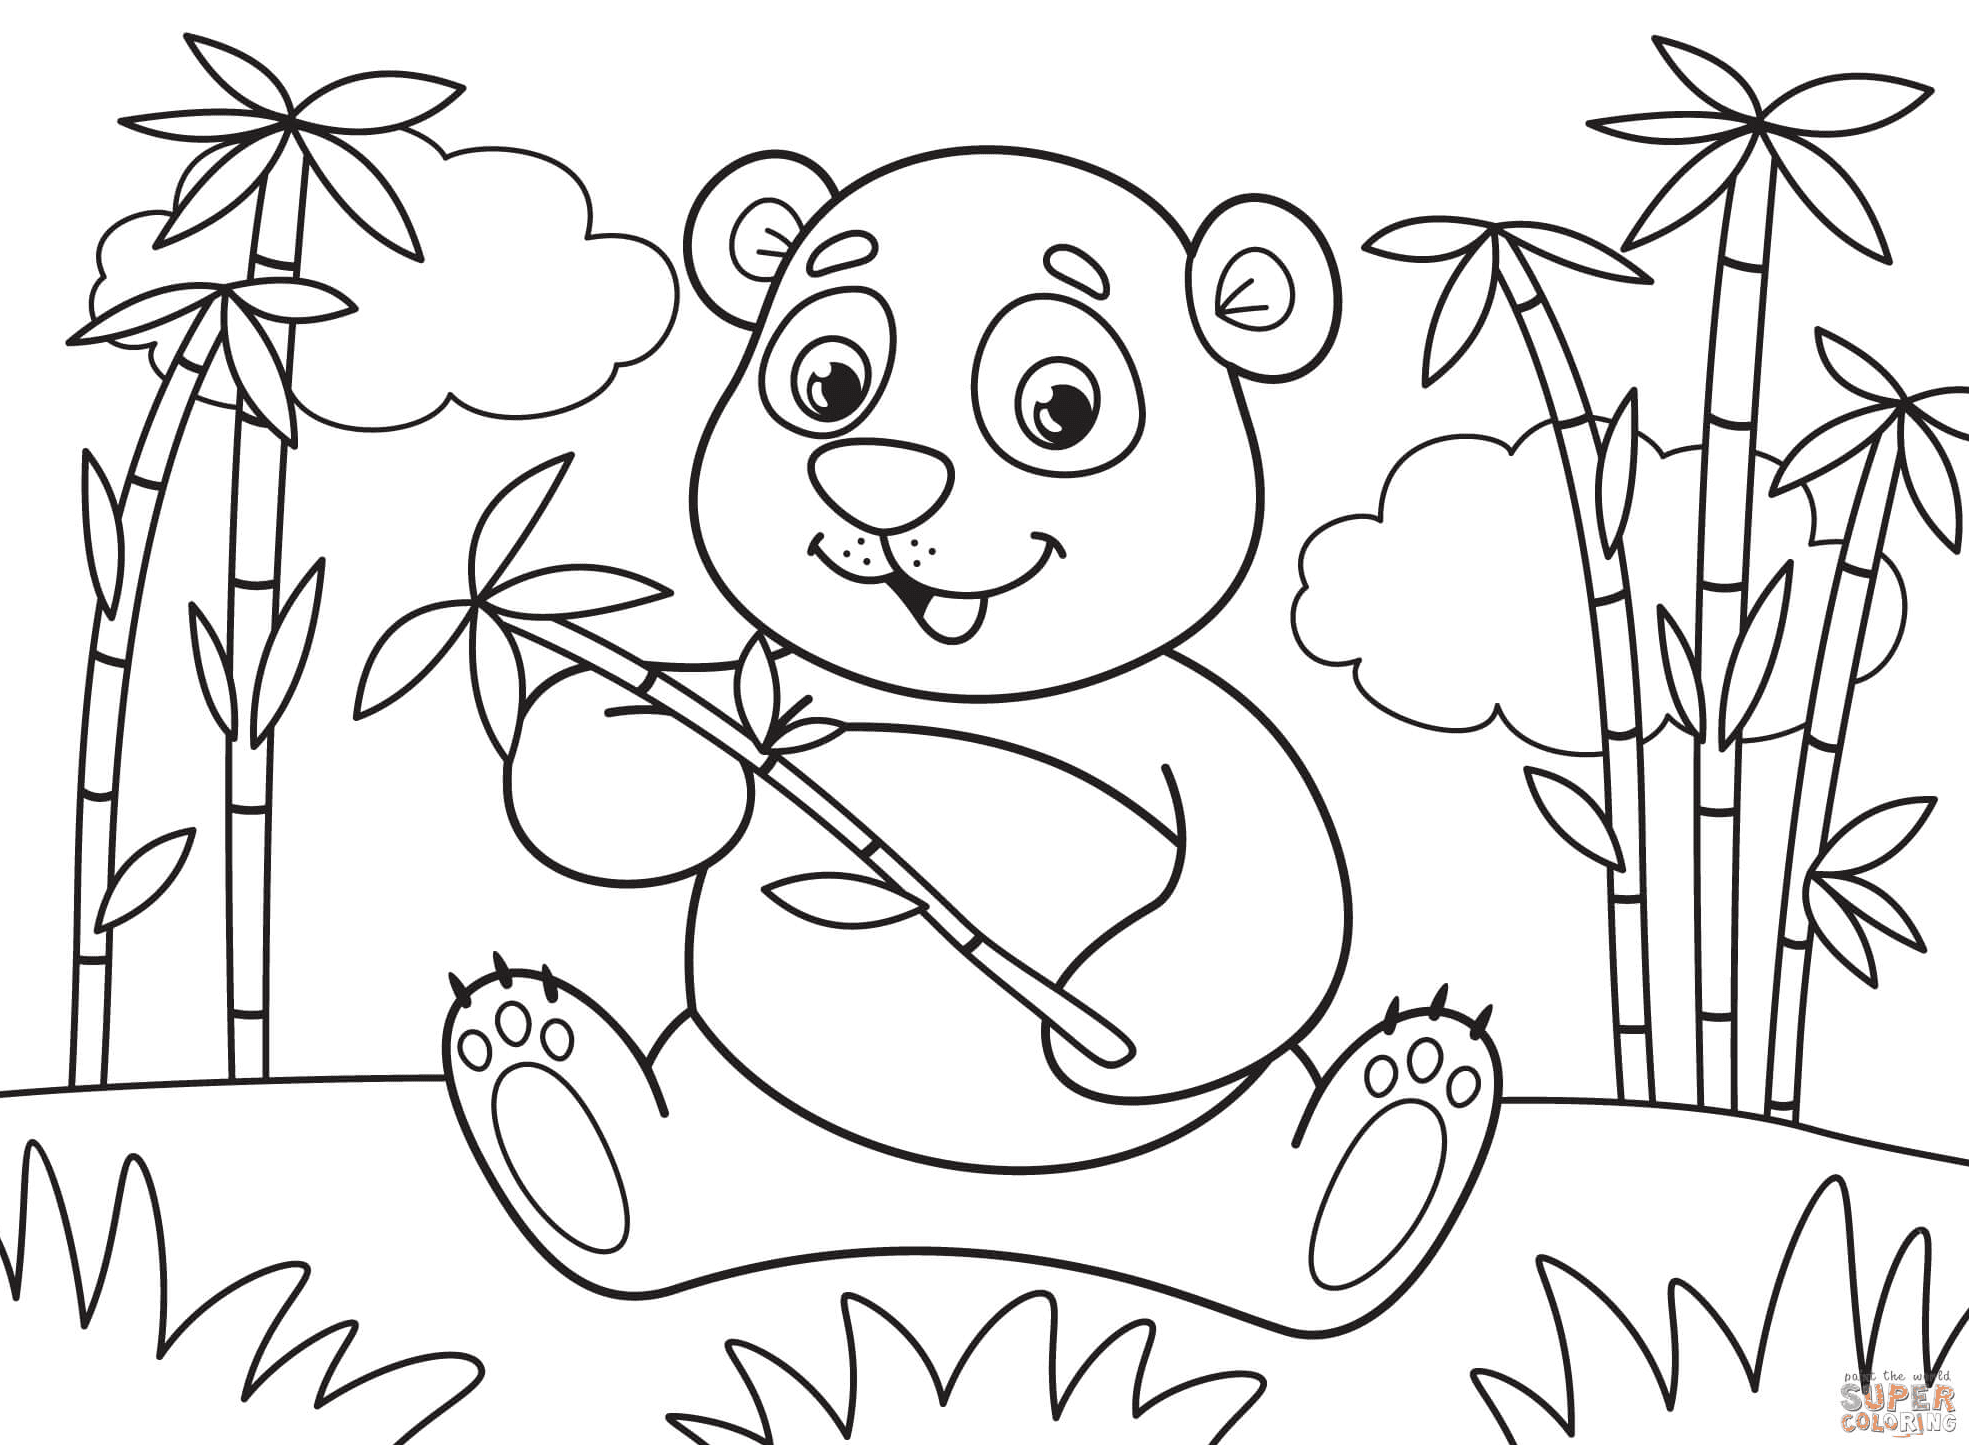 可爱的熊猫与竹子 from Panda